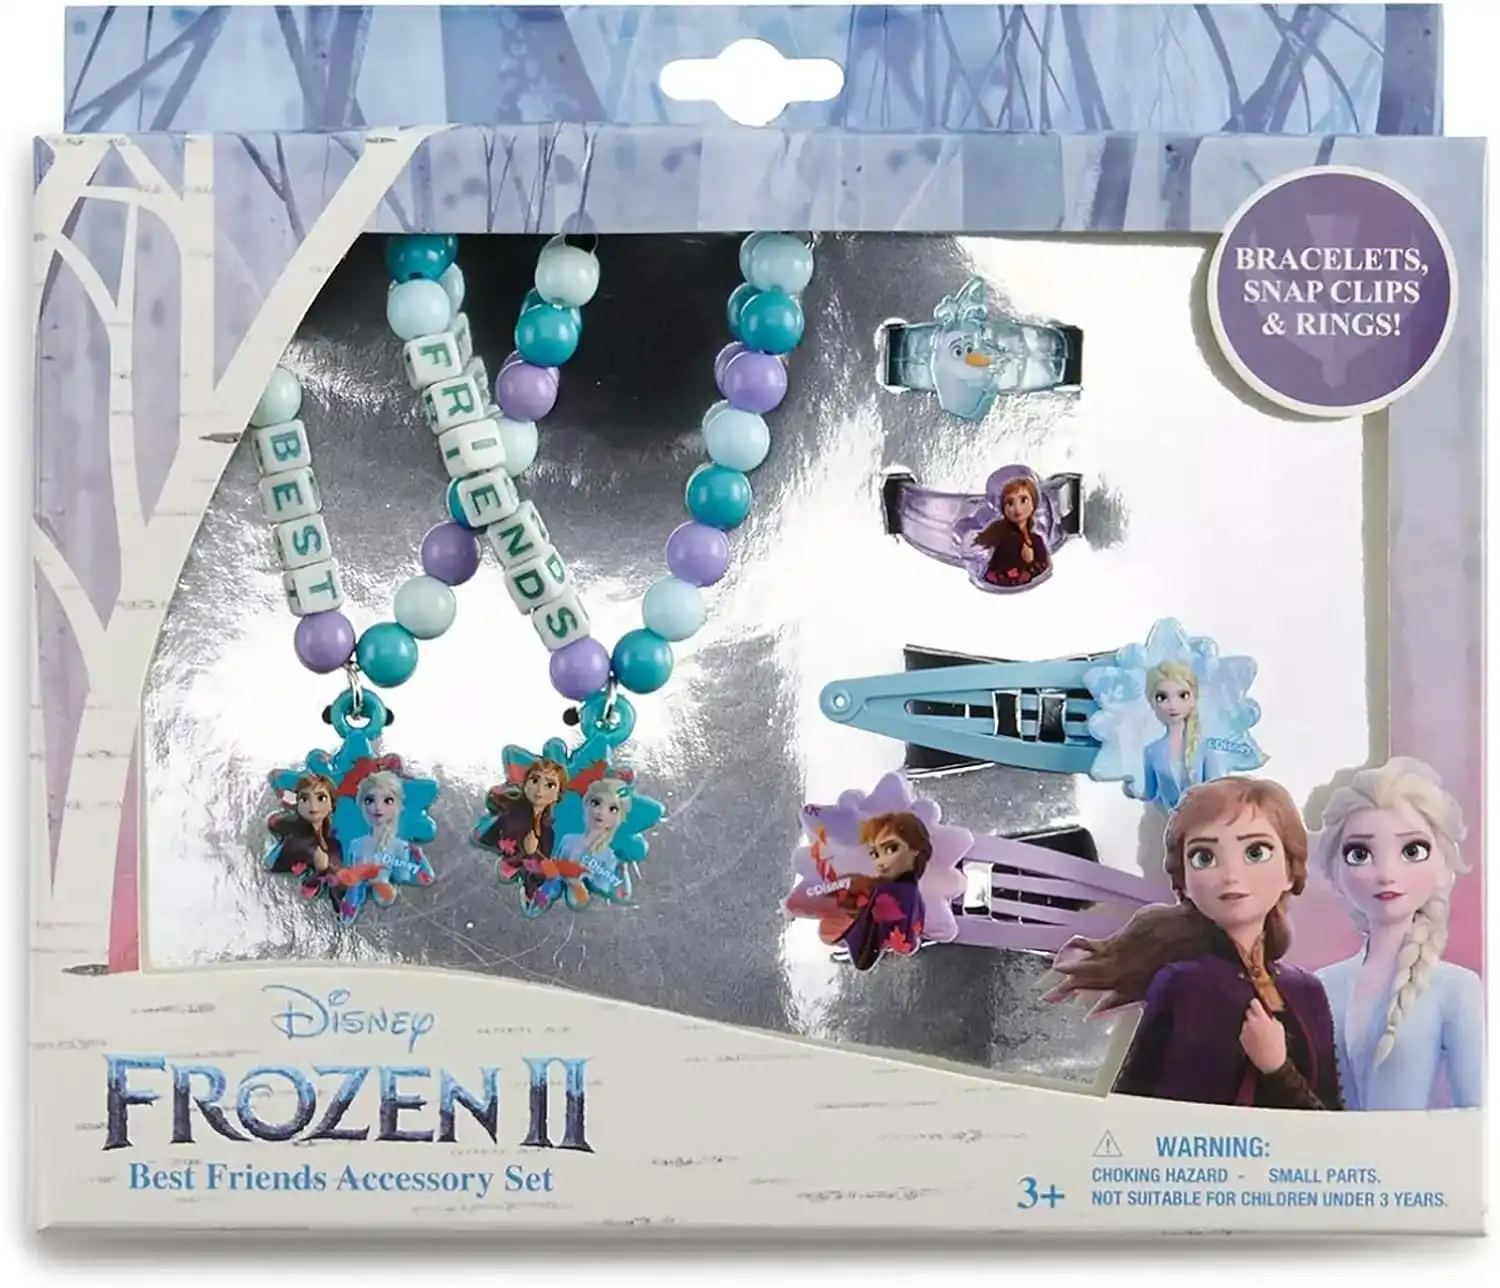 Disney Frozen 2 Best Friends Accessory Set